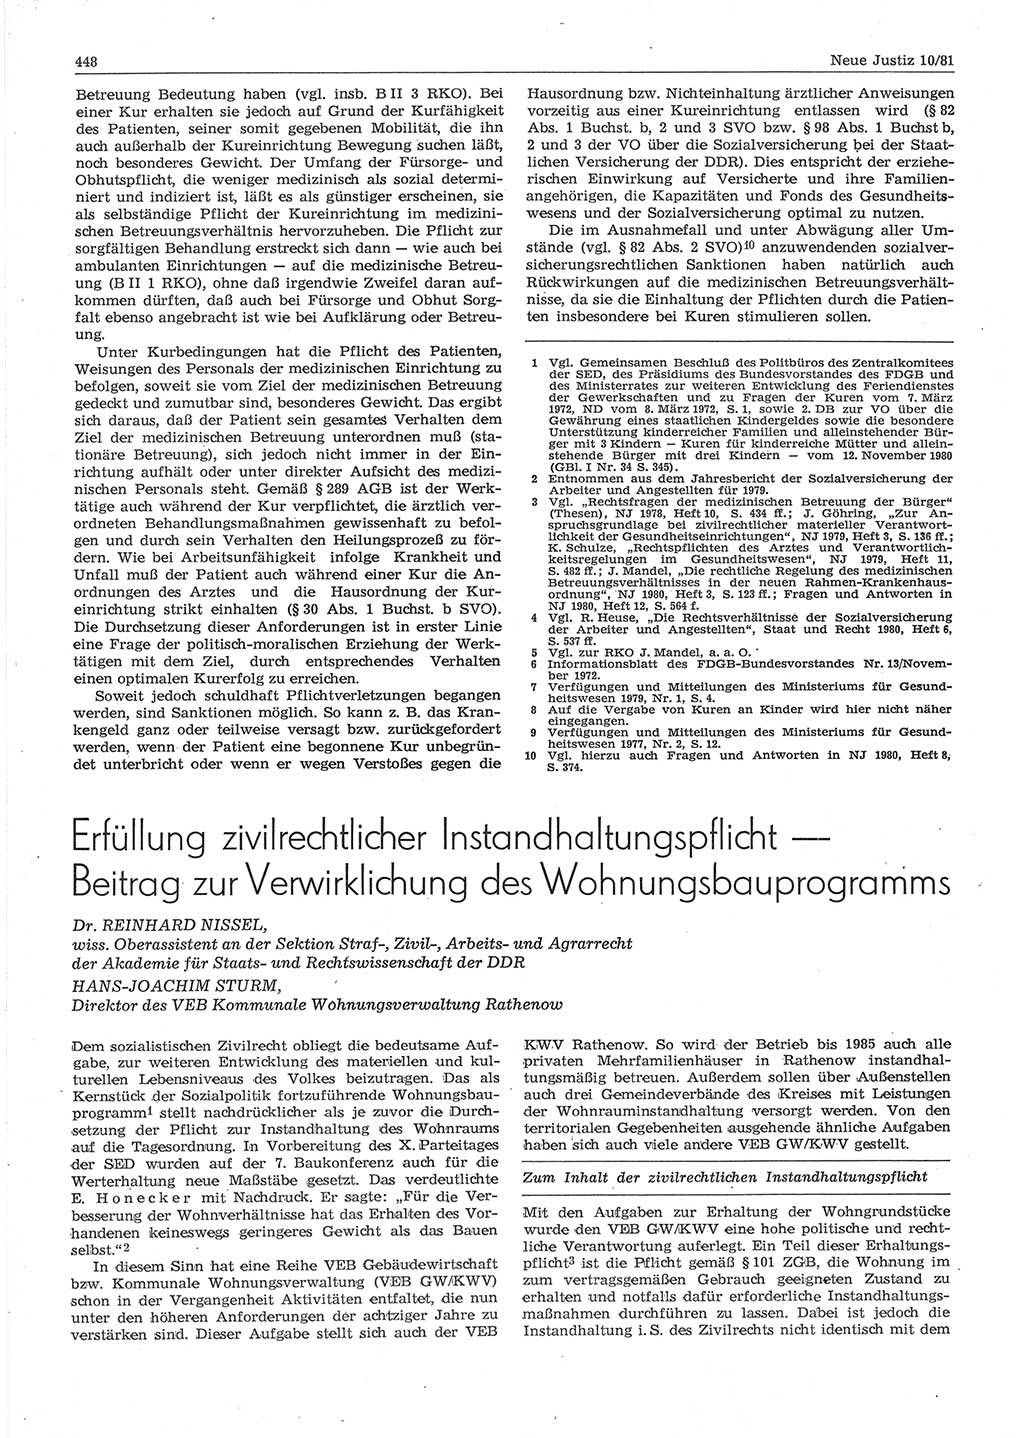 Neue Justiz (NJ), Zeitschrift für sozialistisches Recht und Gesetzlichkeit [Deutsche Demokratische Republik (DDR)], 35. Jahrgang 1981, Seite 448 (NJ DDR 1981, S. 448)